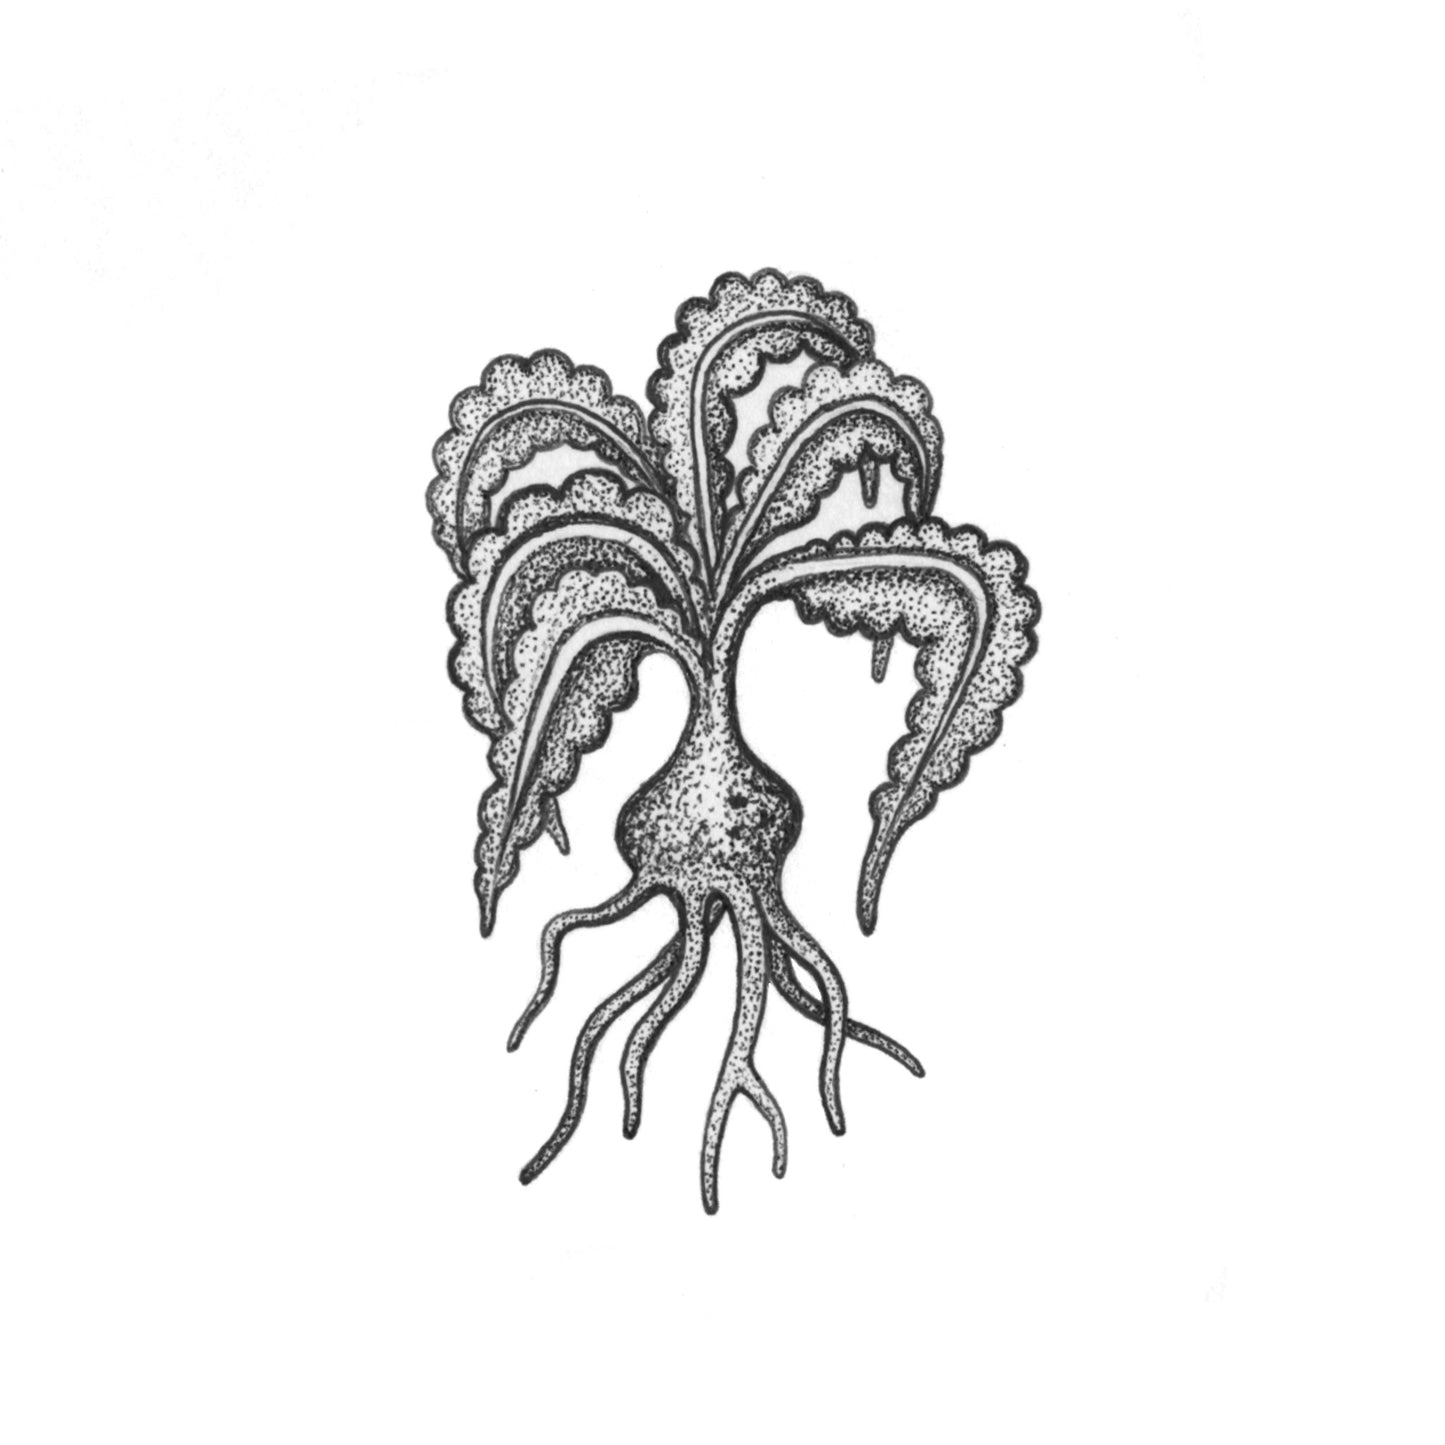 LAYNE : Voynich Mystery Plant 2 : $225